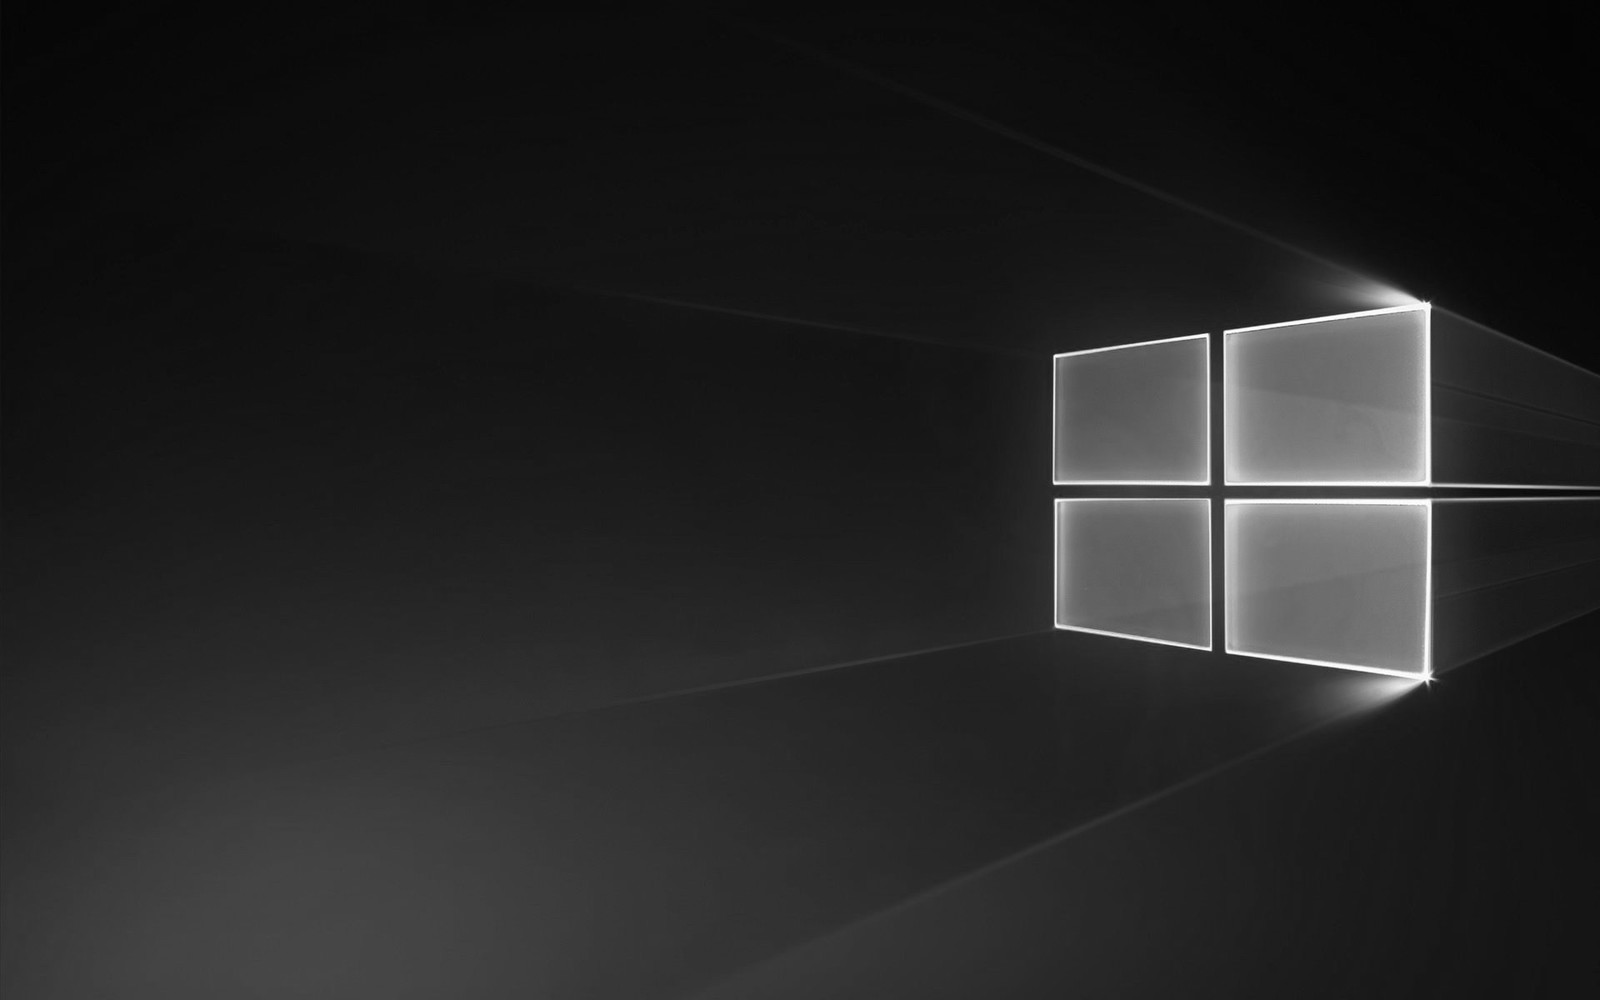 Microsoft atkārtoti izlaiž Windows kumulatīvo atjauninājumu KB 4469342 1809. versijai, novērš vecās problēmas